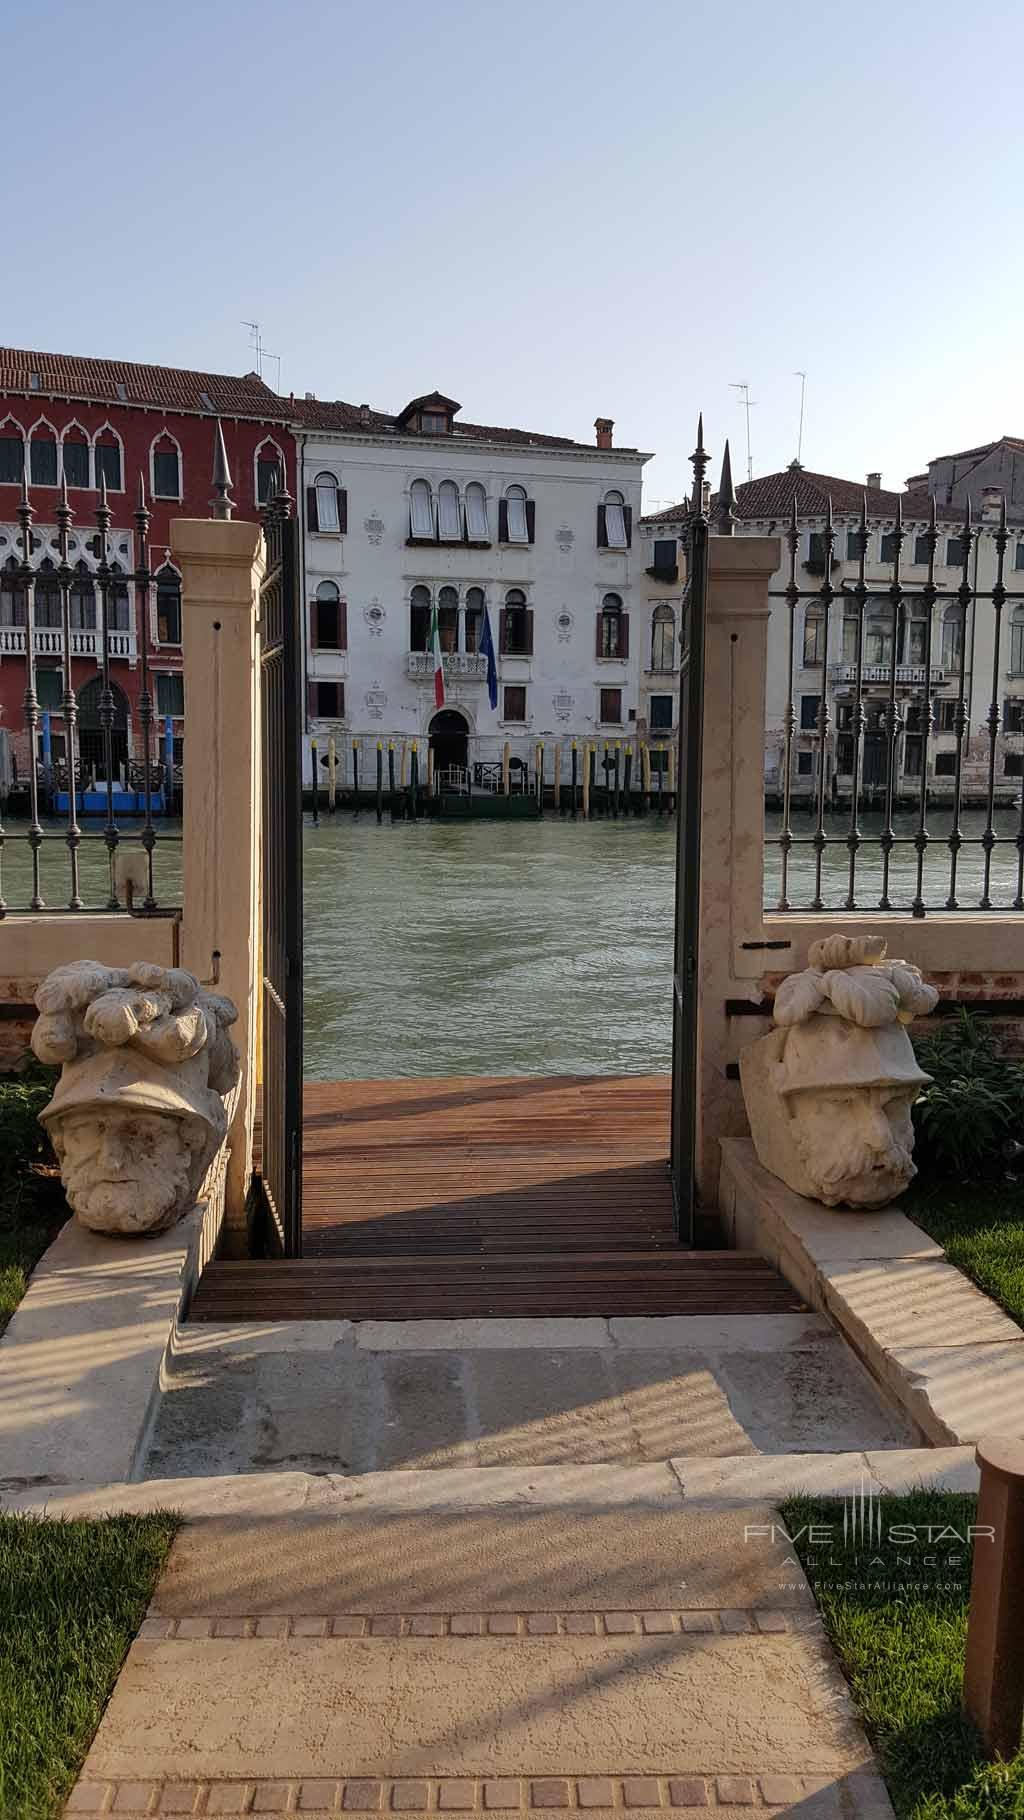 Canal at Palazzo Venart, Venezia, Italy